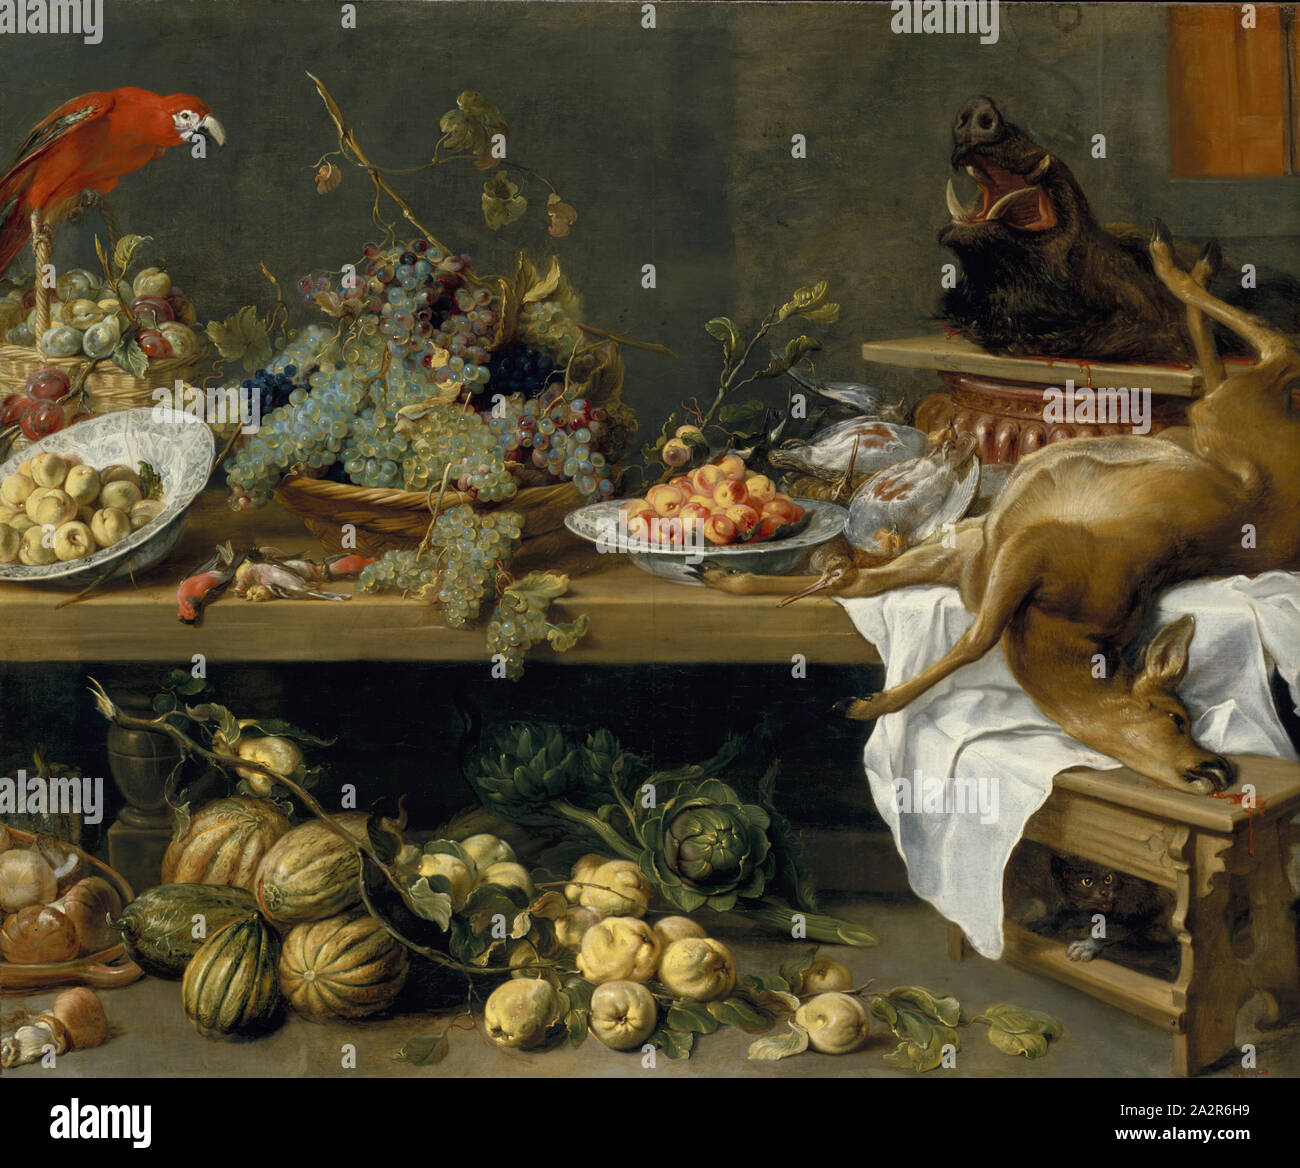 Frans Snyders, flamand, 1579-1657, Nature morte avec fruits, légumes et morts jeu, ca. Entre 1635 et 1637, huile sur toile, non monté : 65 × 78 3/8 po 3/4 po (166,1 × 200 cm Banque D'Images